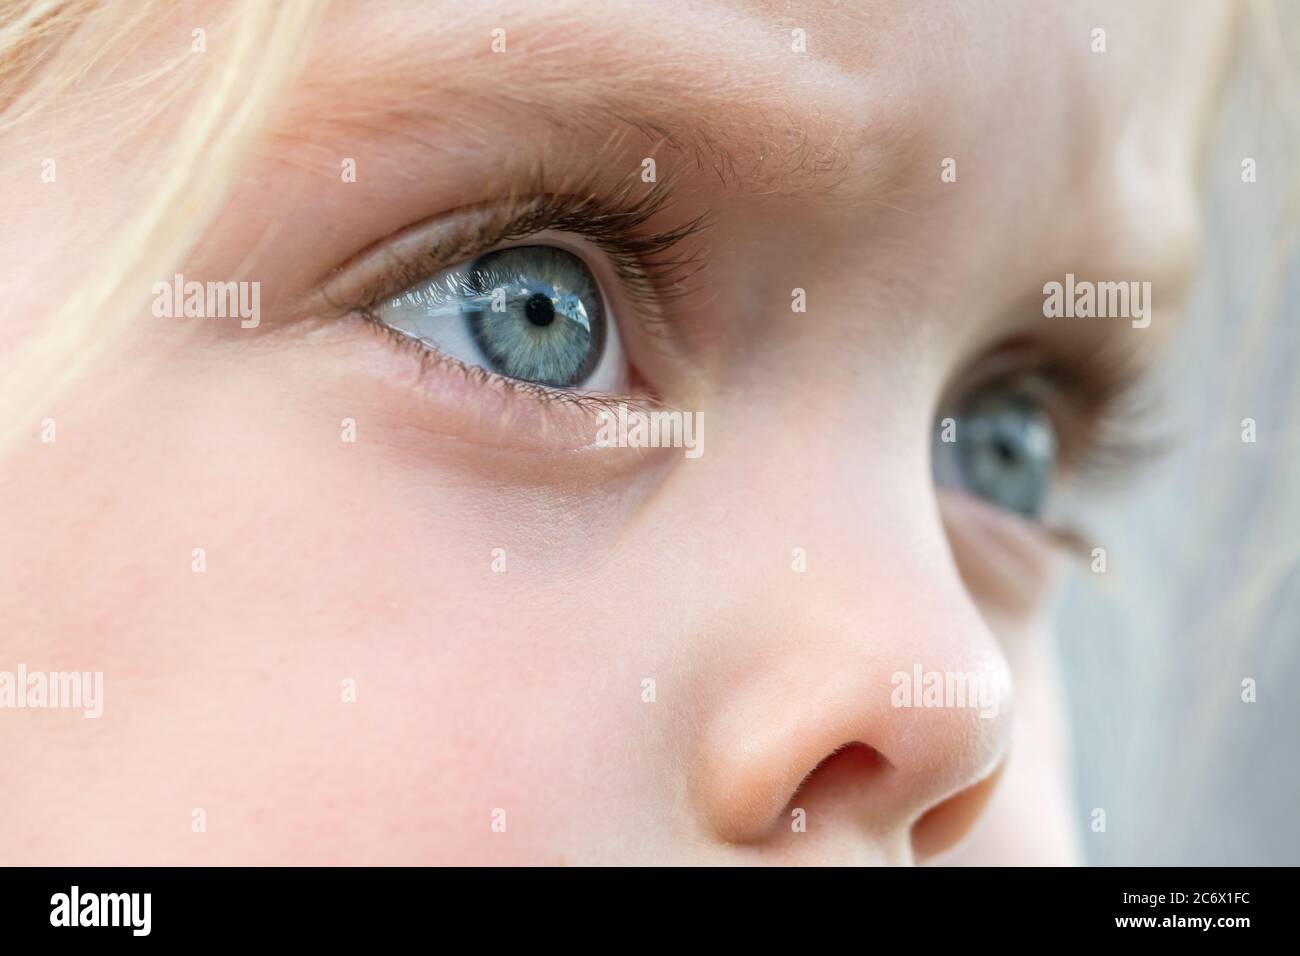 Primer plano de los ojos azules de un niño rubio hermoso Foto de stock